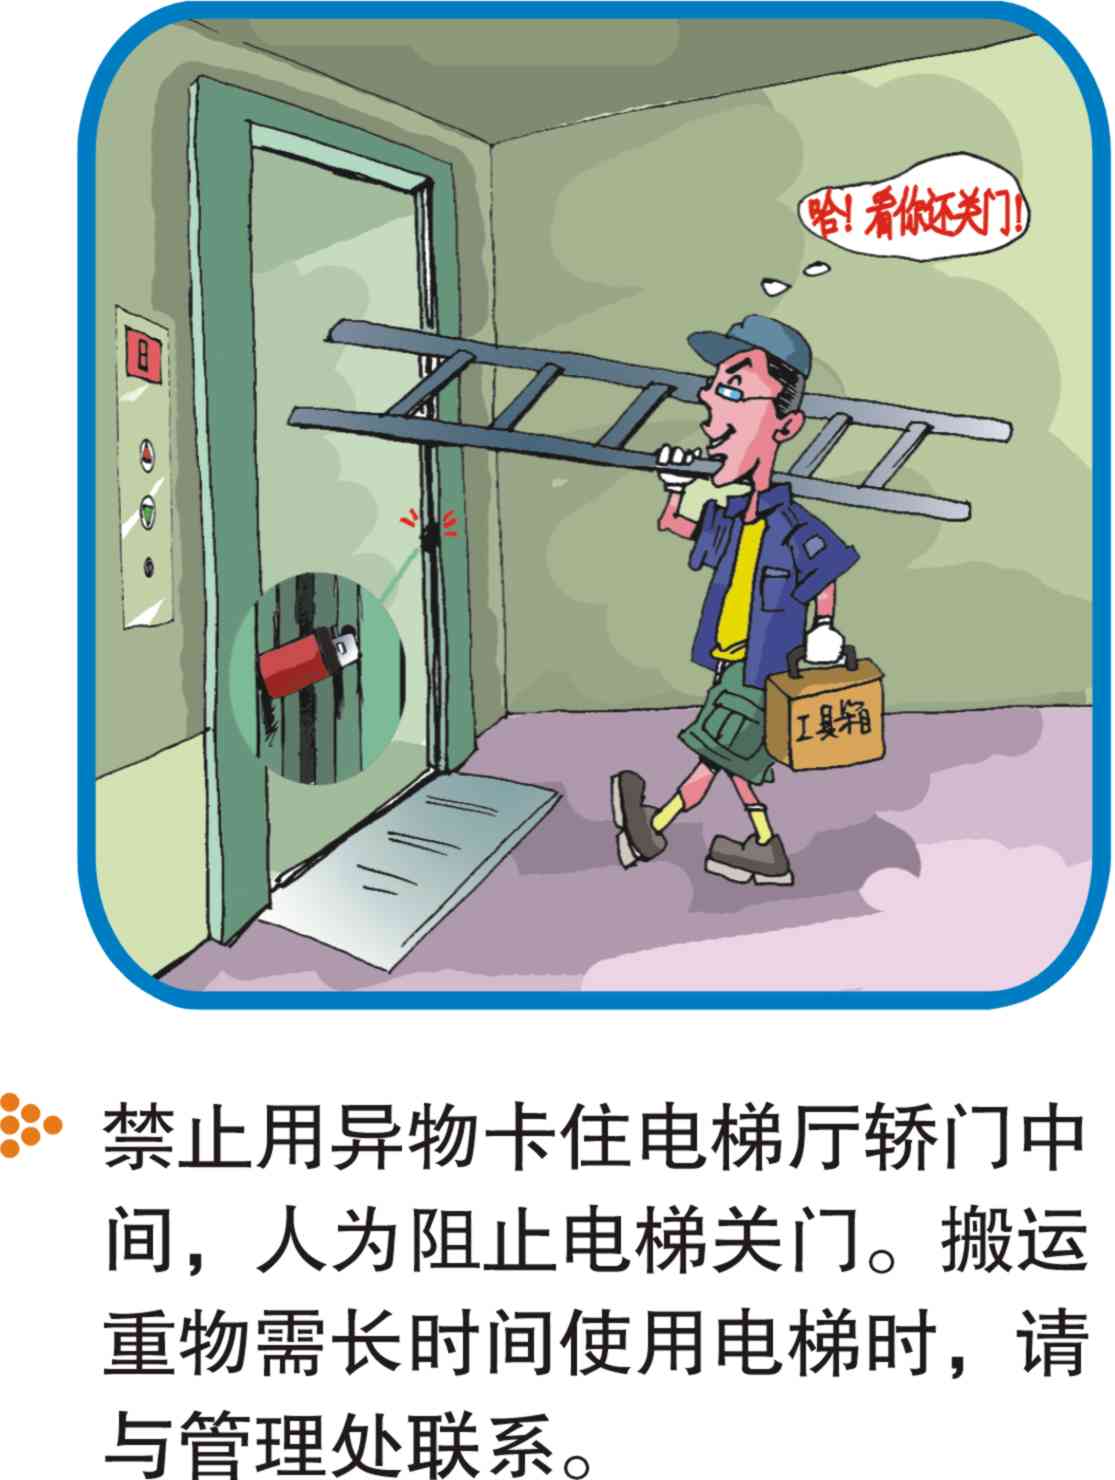 遭遇电梯故障怎么办？这些安全知识很重要！｜安仔话安全㉛_救援